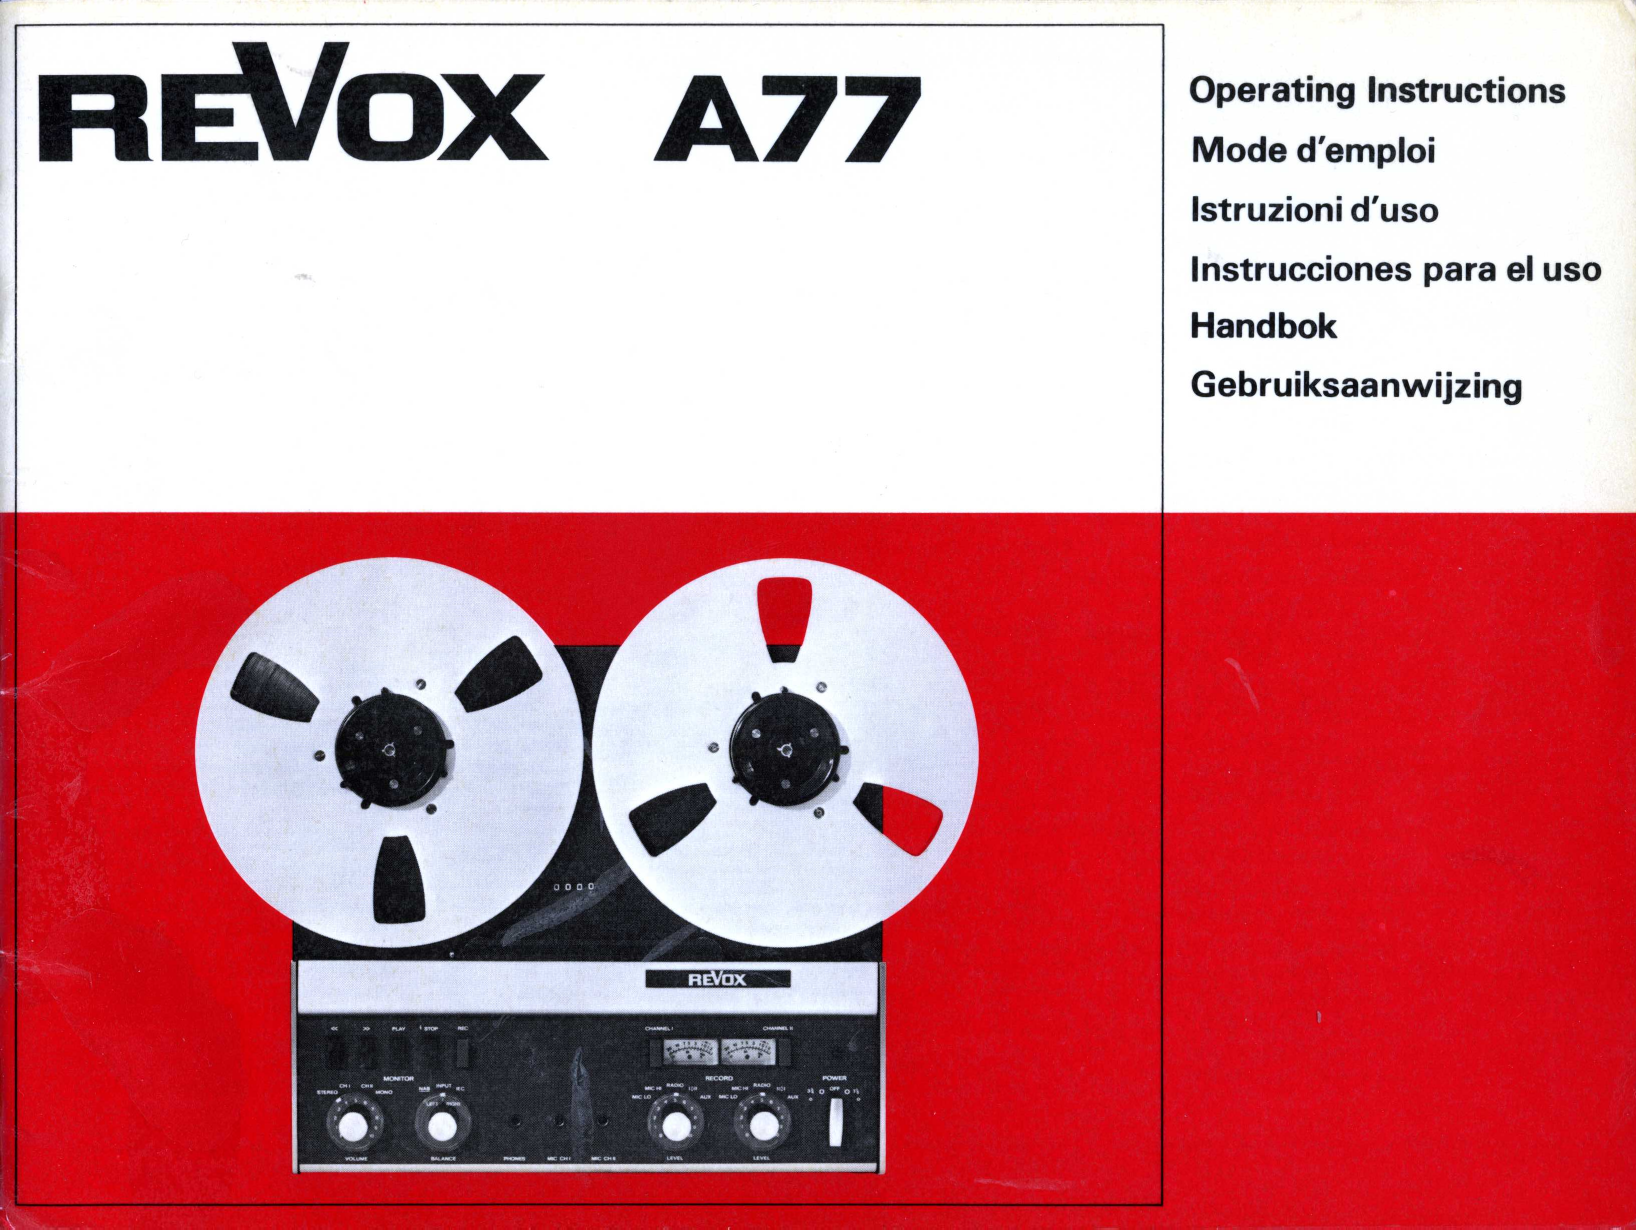 Bedienungsanleitung-Operating Instructions für Revox A 77 